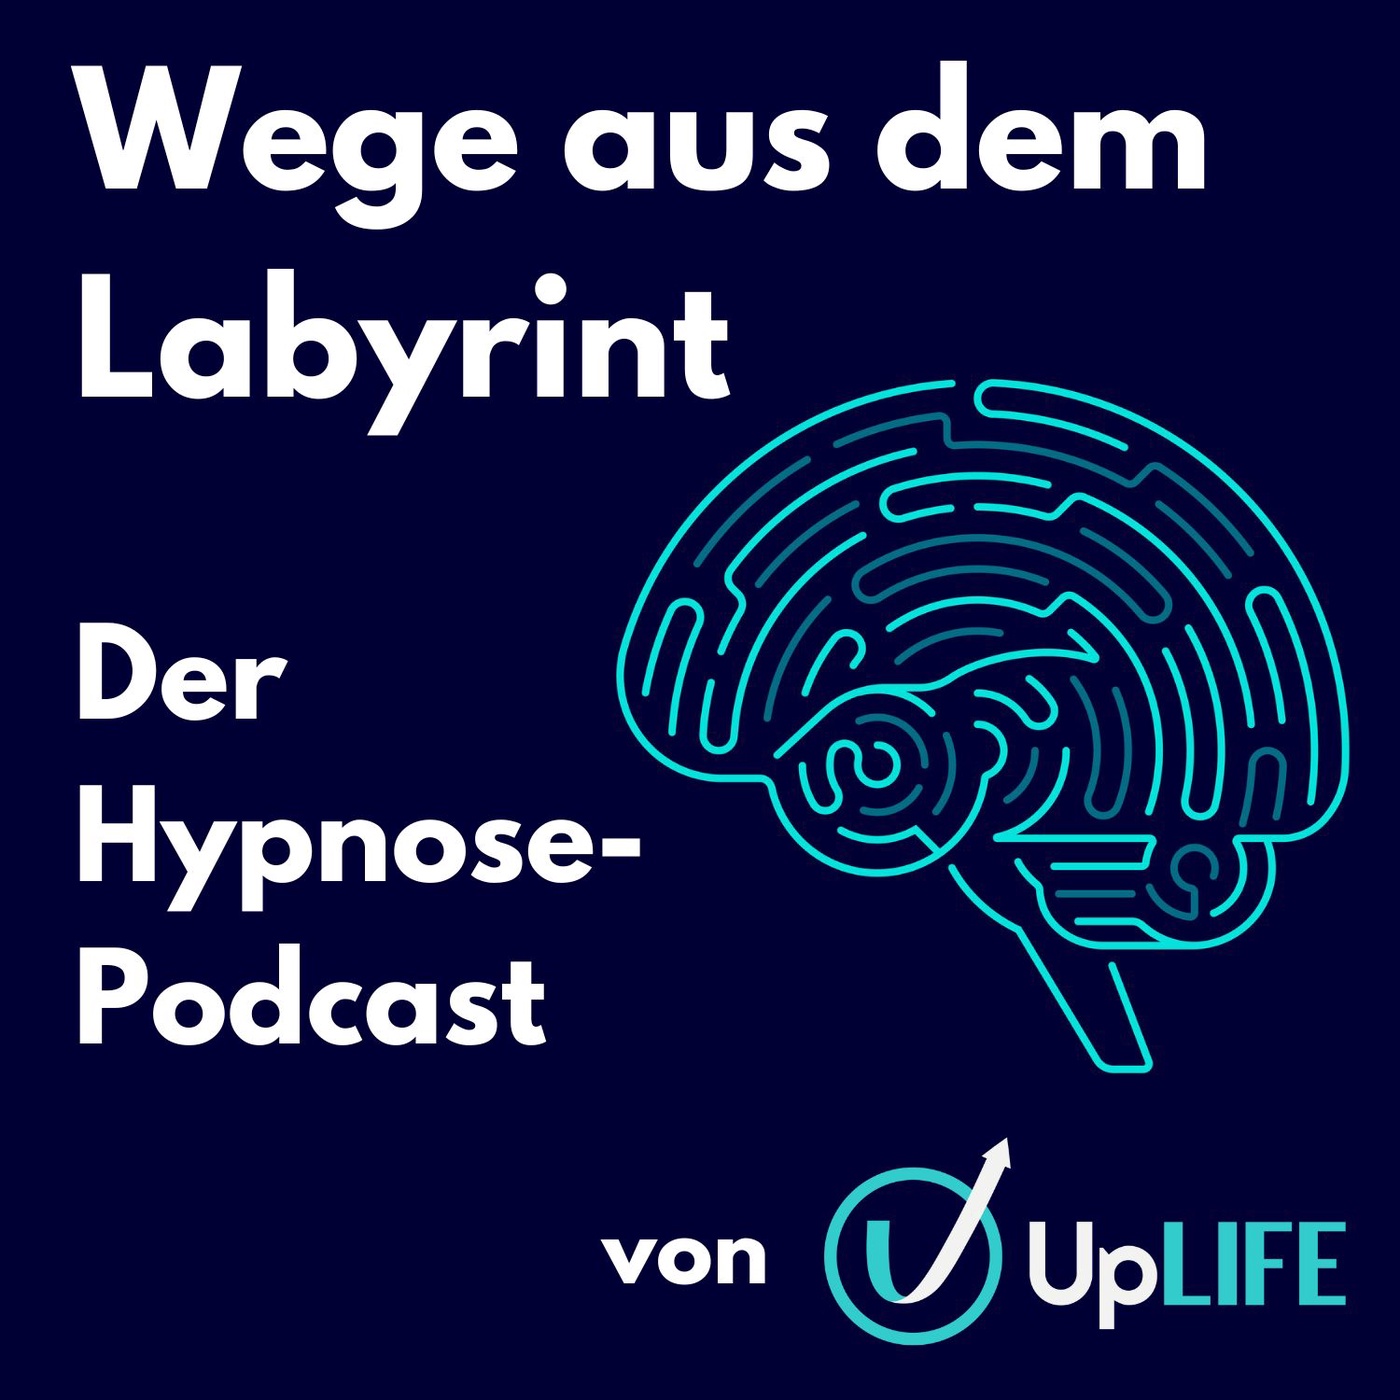 Wege aus dem Labyrinth - Der Hypnose-Podcast von UpLIFE